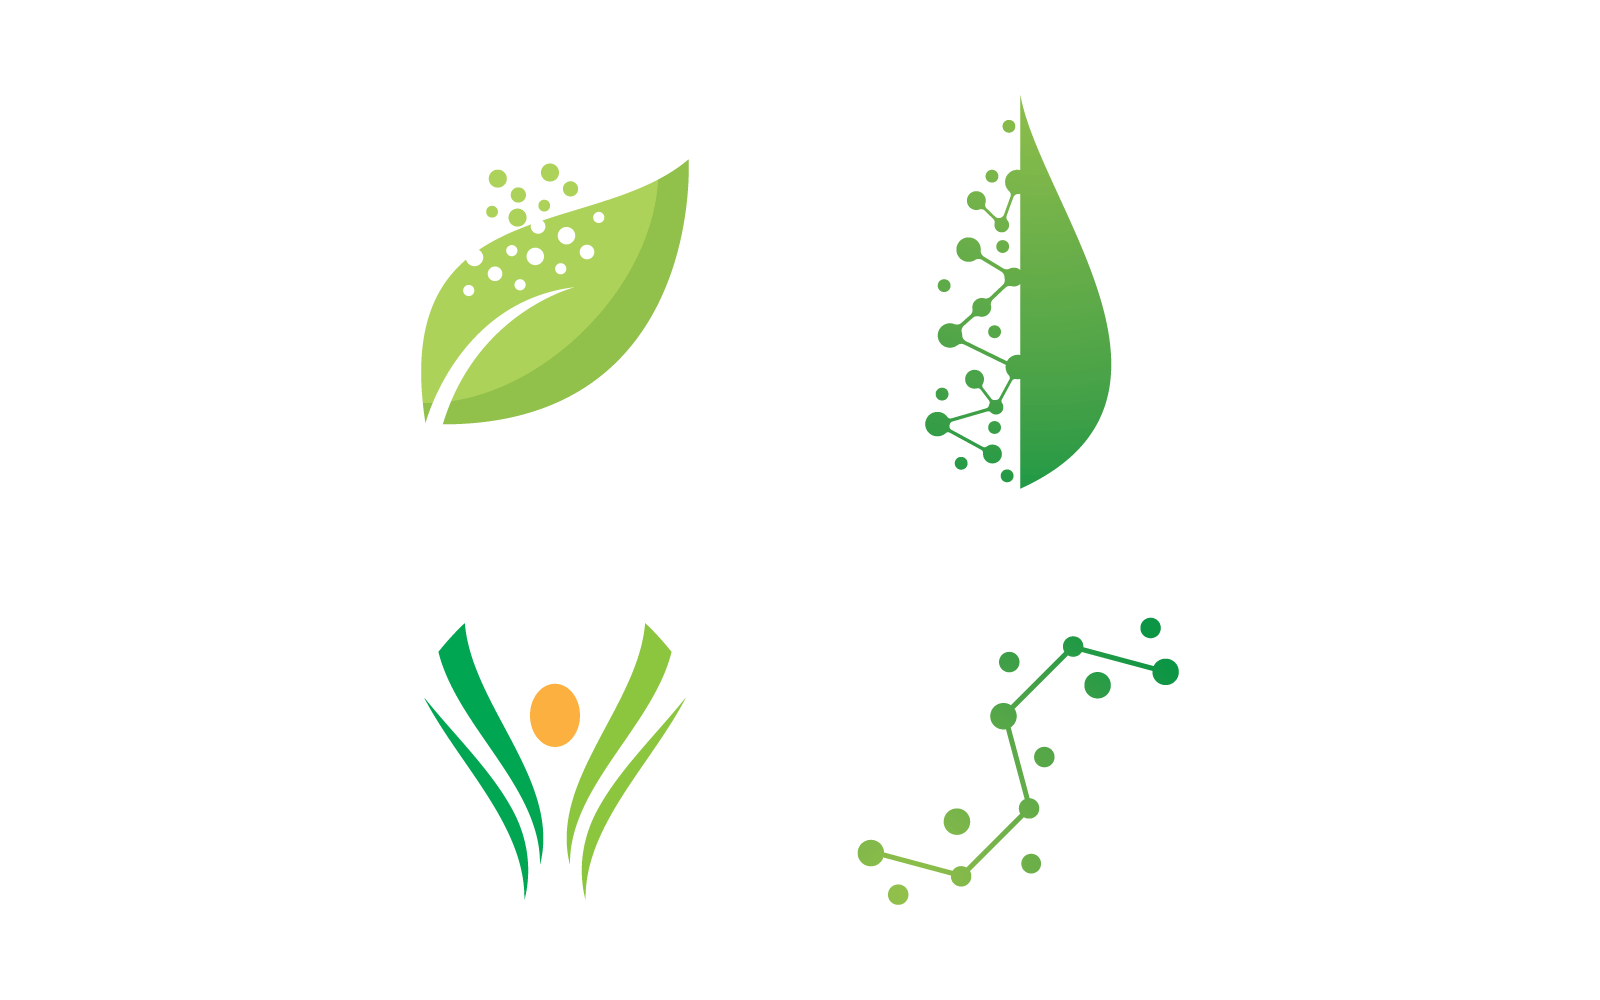 Bio tech leaf and molecule logo design vector